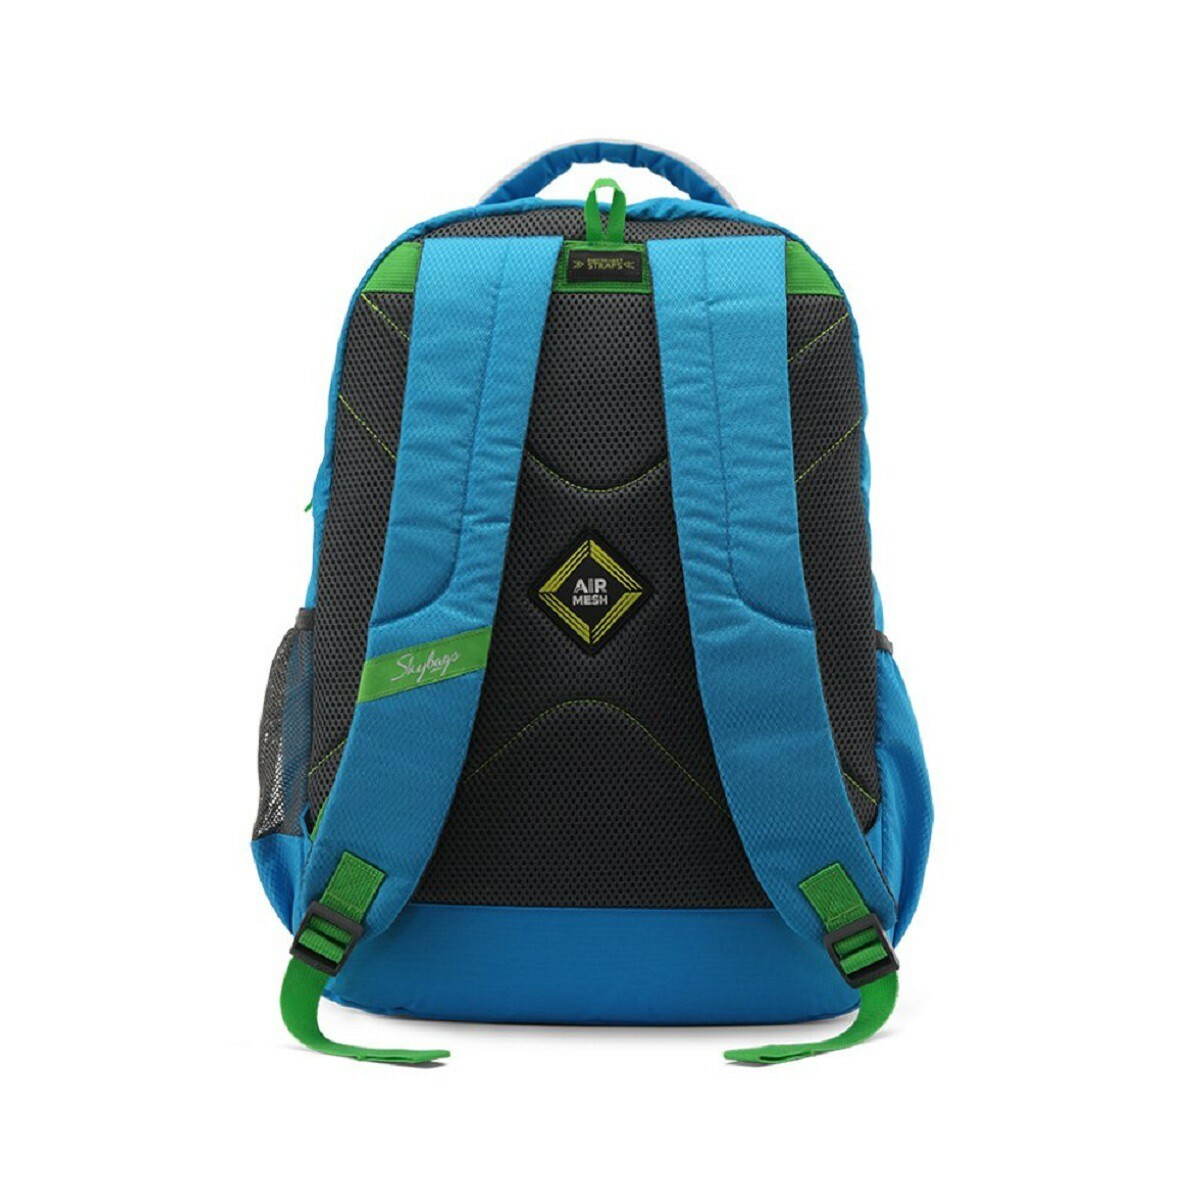 Skybags Backpack Bingo Plus 05 Blue